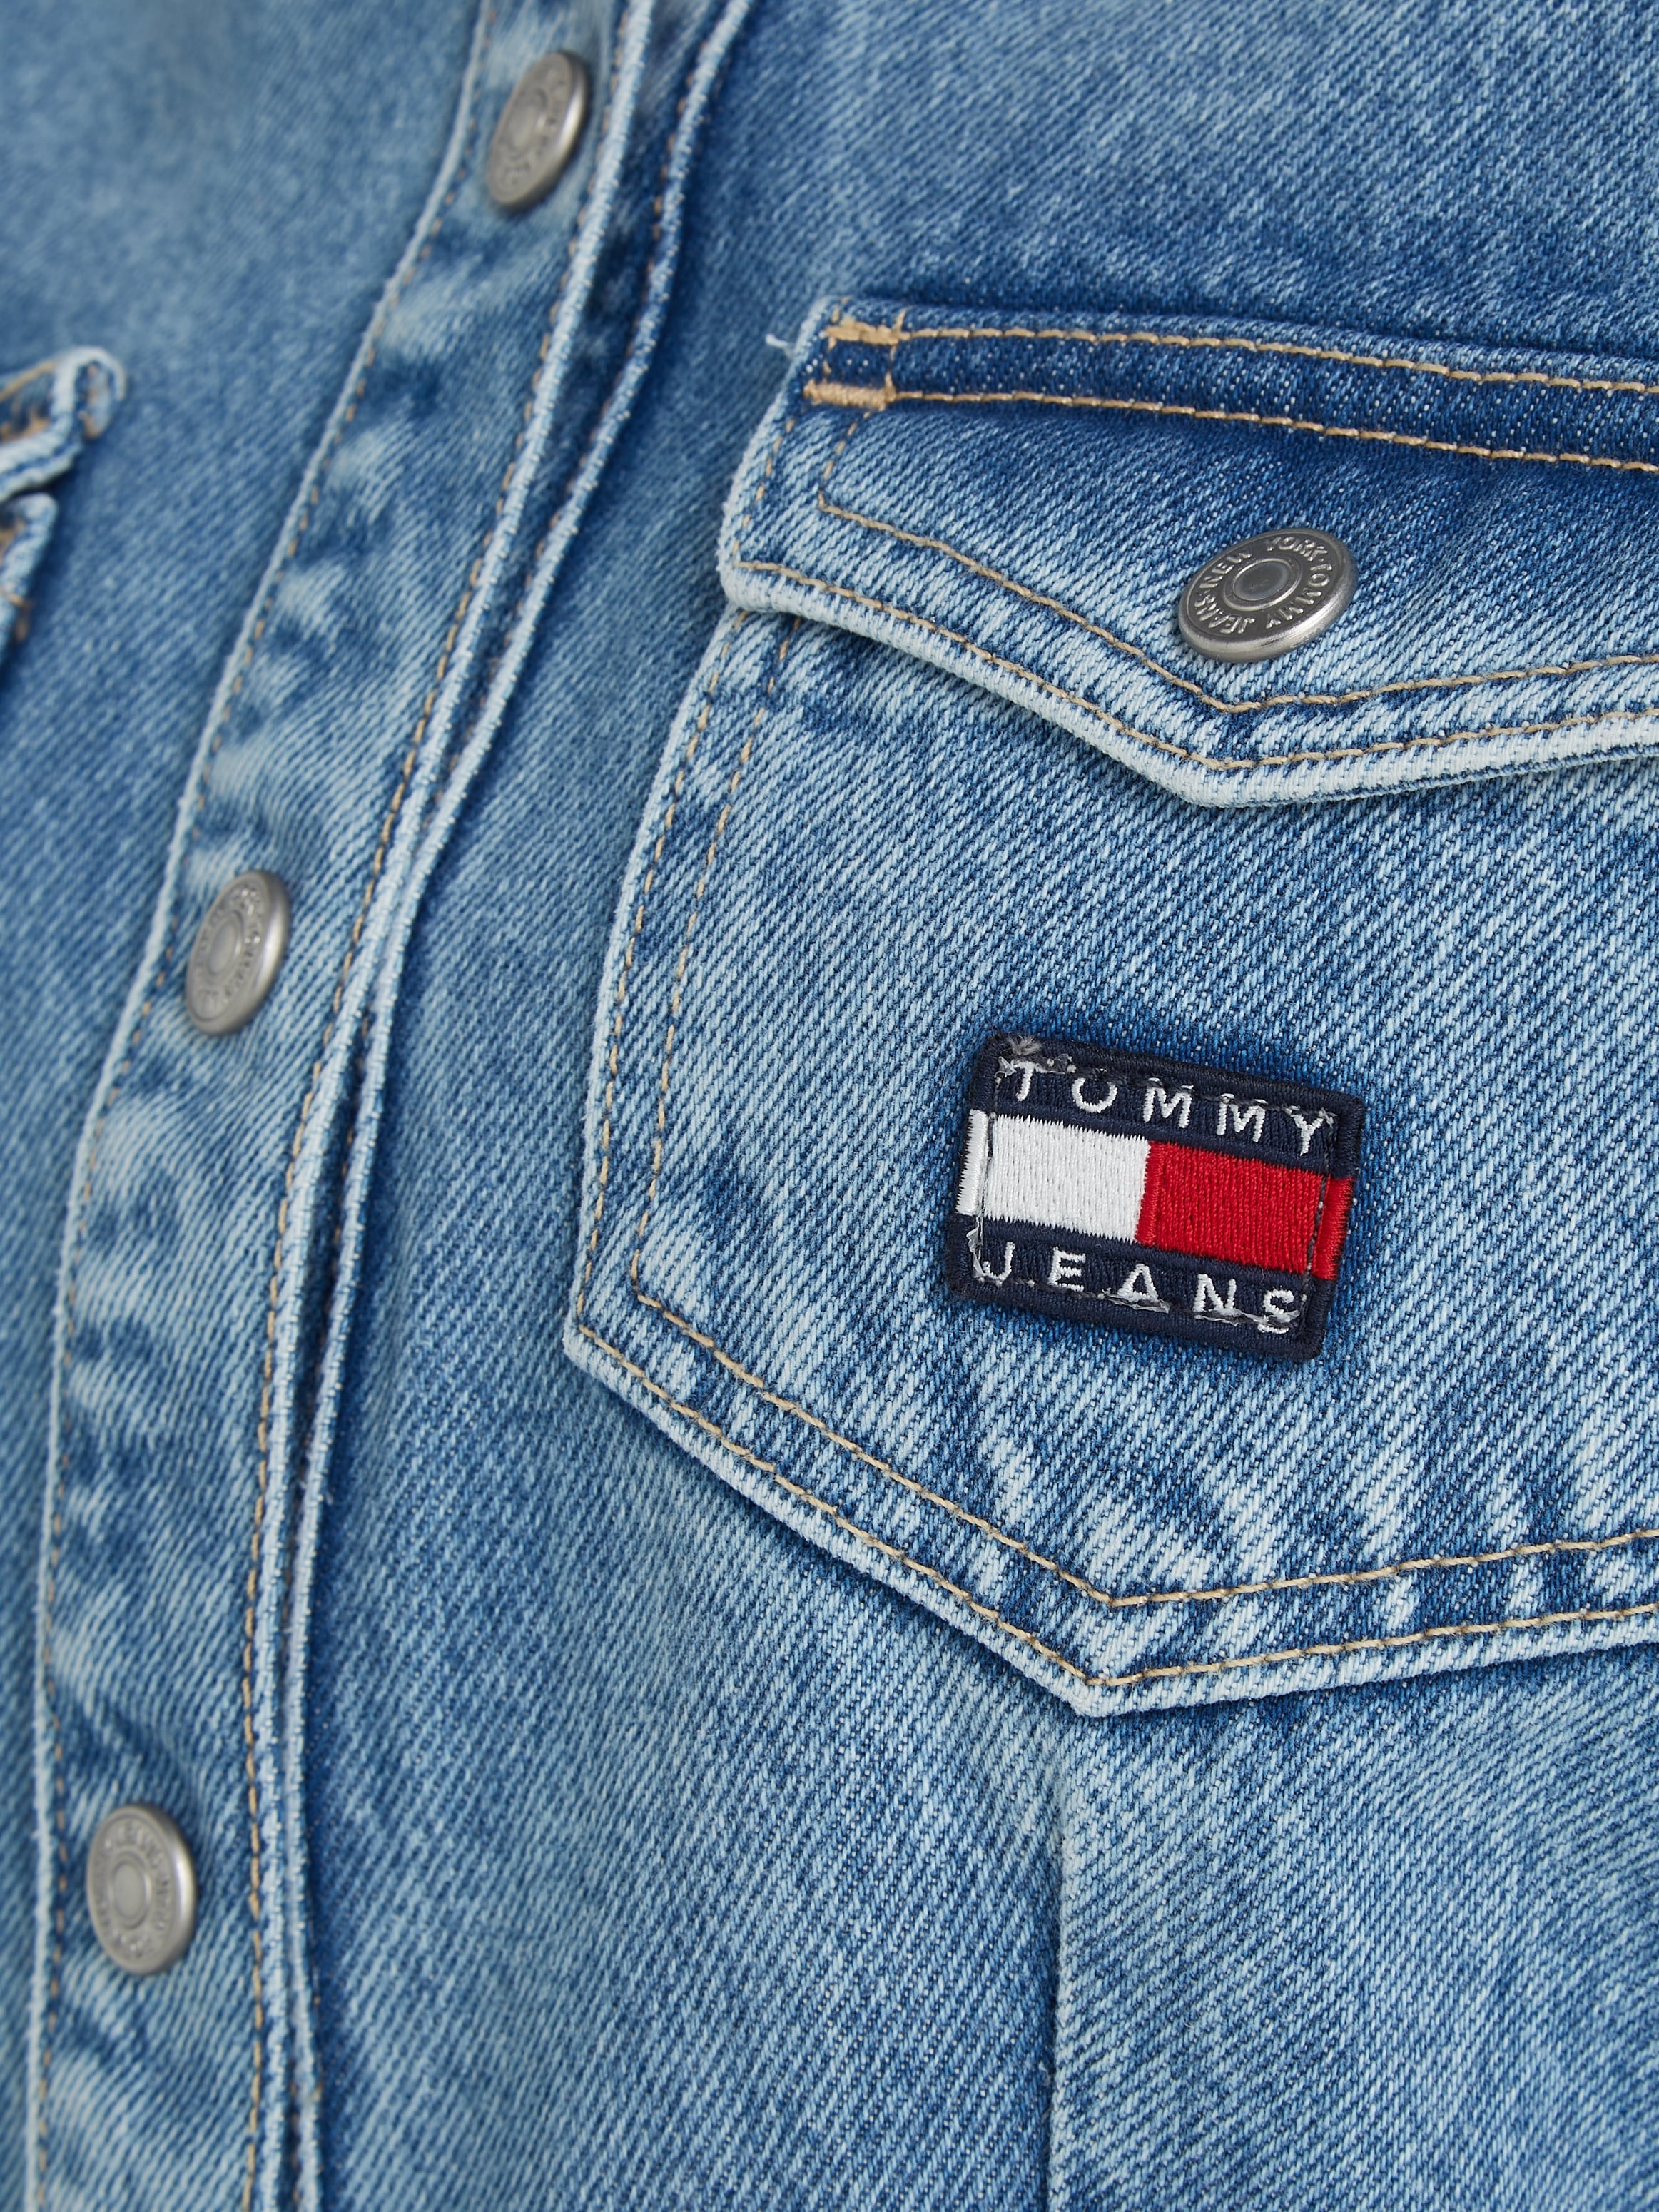 Tommy Jeans Jeanskleid »SLIM BELTED LS DRESS DG7012«, (2 tlg.), Mit Tommy Jeans Markenlabel